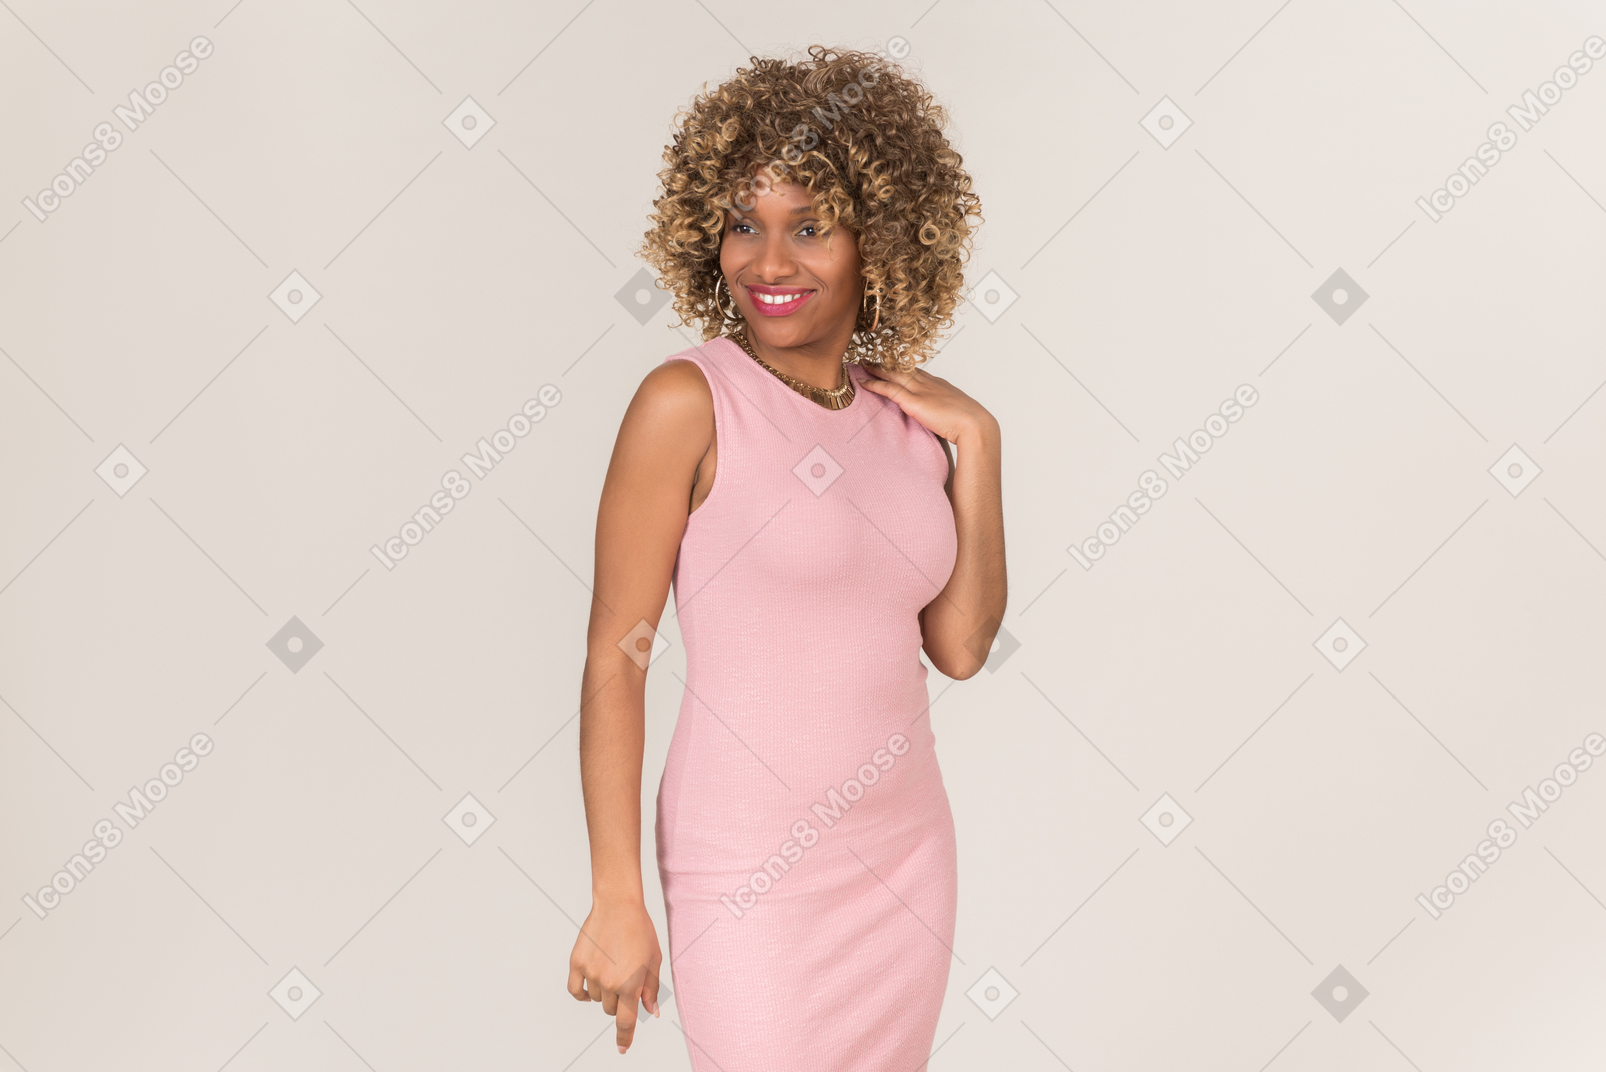 분홍색 드레스를 입고 서서 웃고 있는 여자